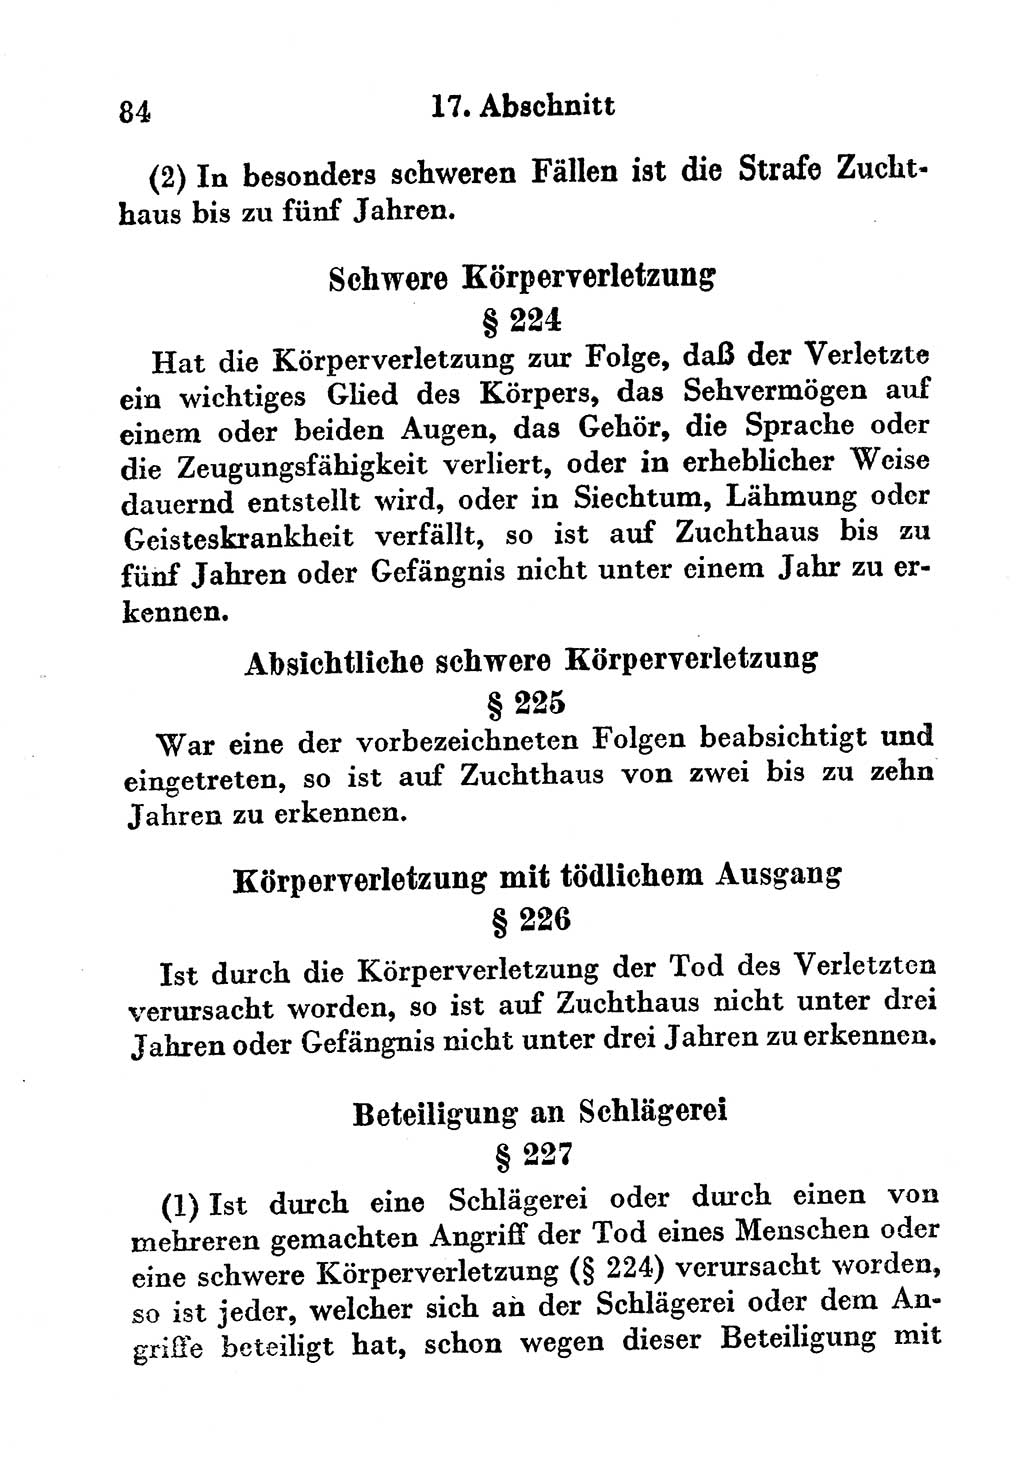 Strafgesetzbuch (StGB) und andere Strafgesetze [Deutsche Demokratische Republik (DDR)] 1956, Seite 84 (StGB Strafges. DDR 1956, S. 84)